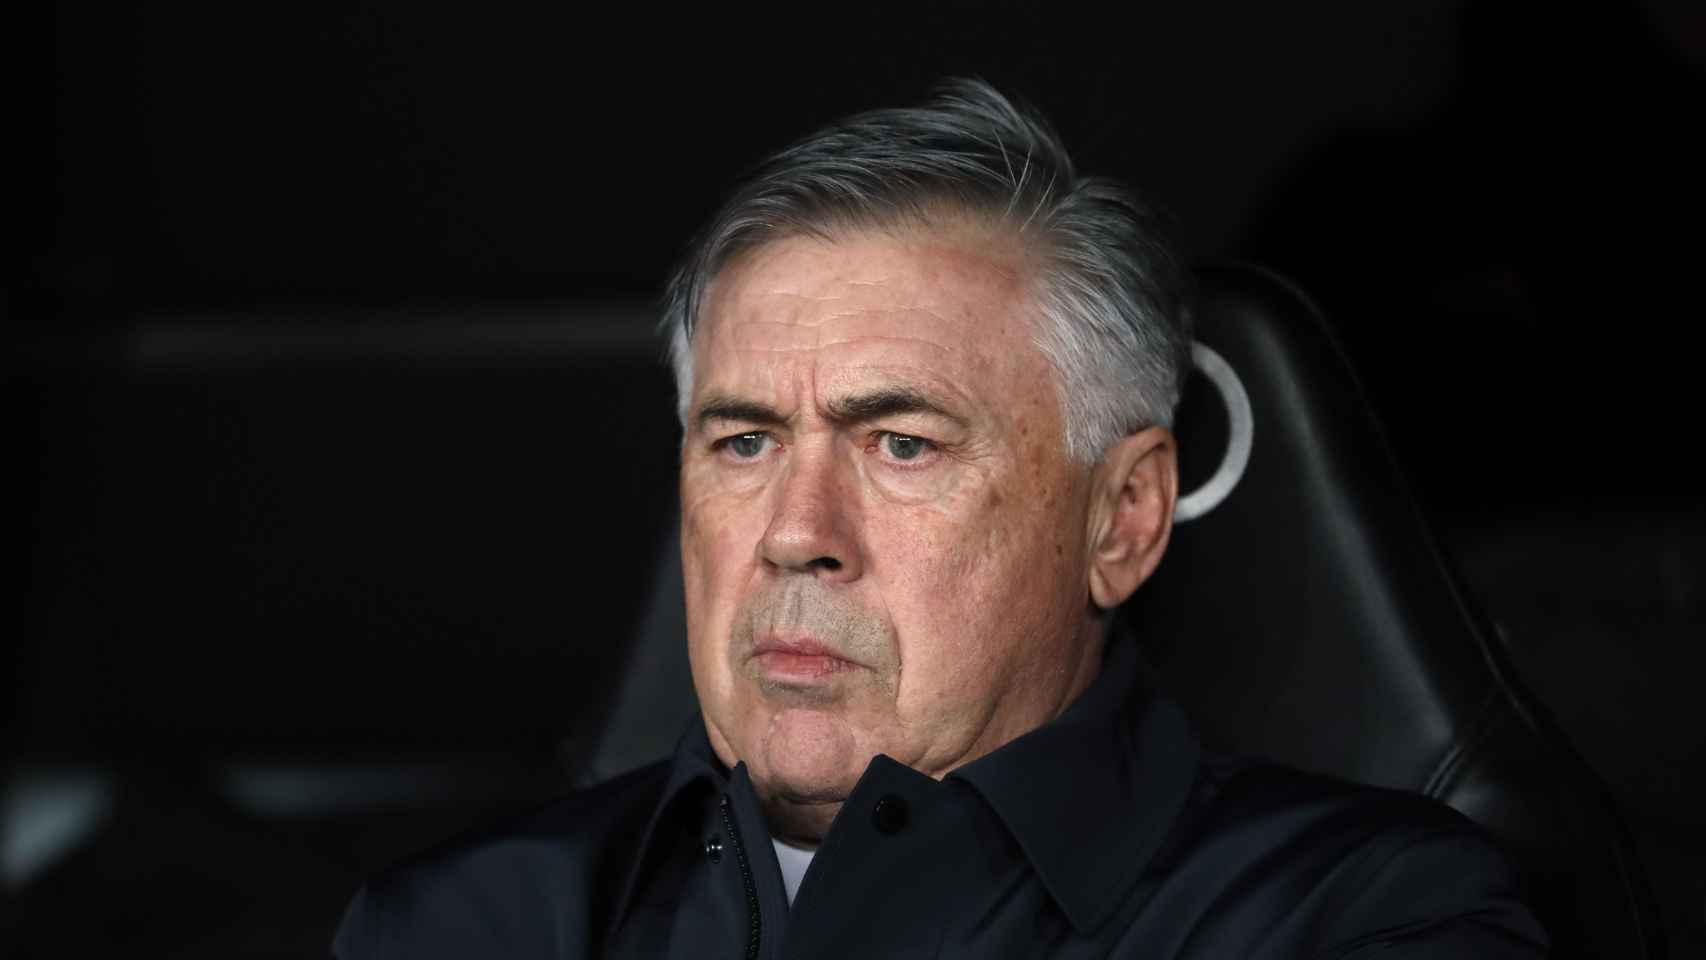 Carlo Ancelotti, en el banquillo del Santiago Bernabéu